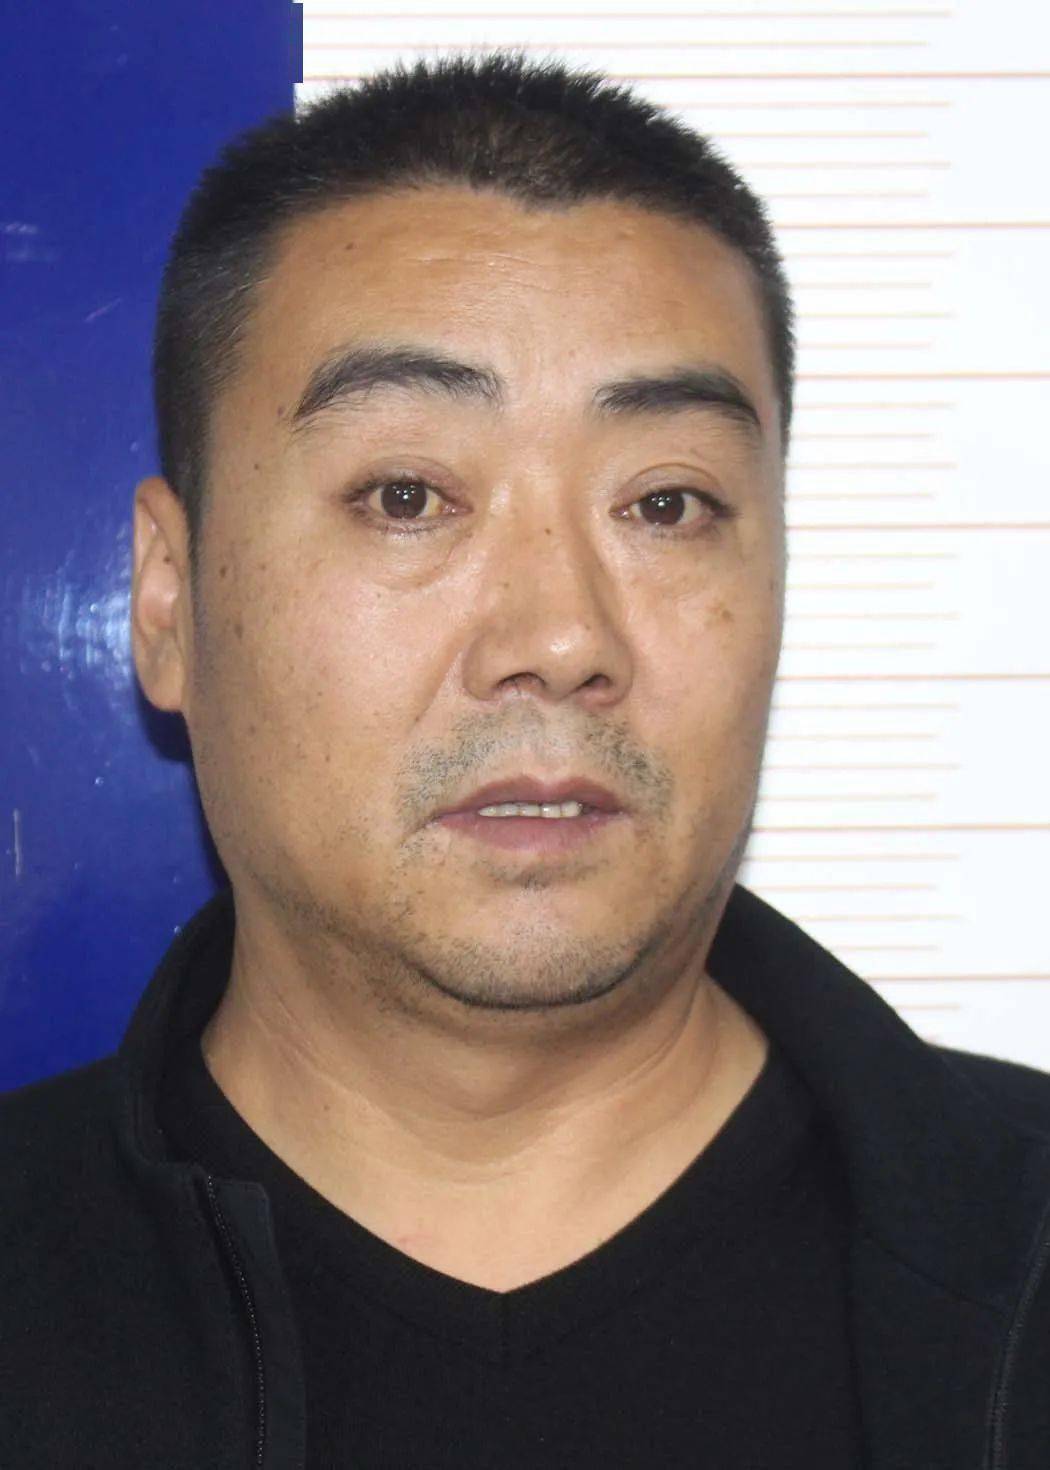 犯罪嫌疑人王光锦,男,汉族,现年45岁,家住高台县城关镇